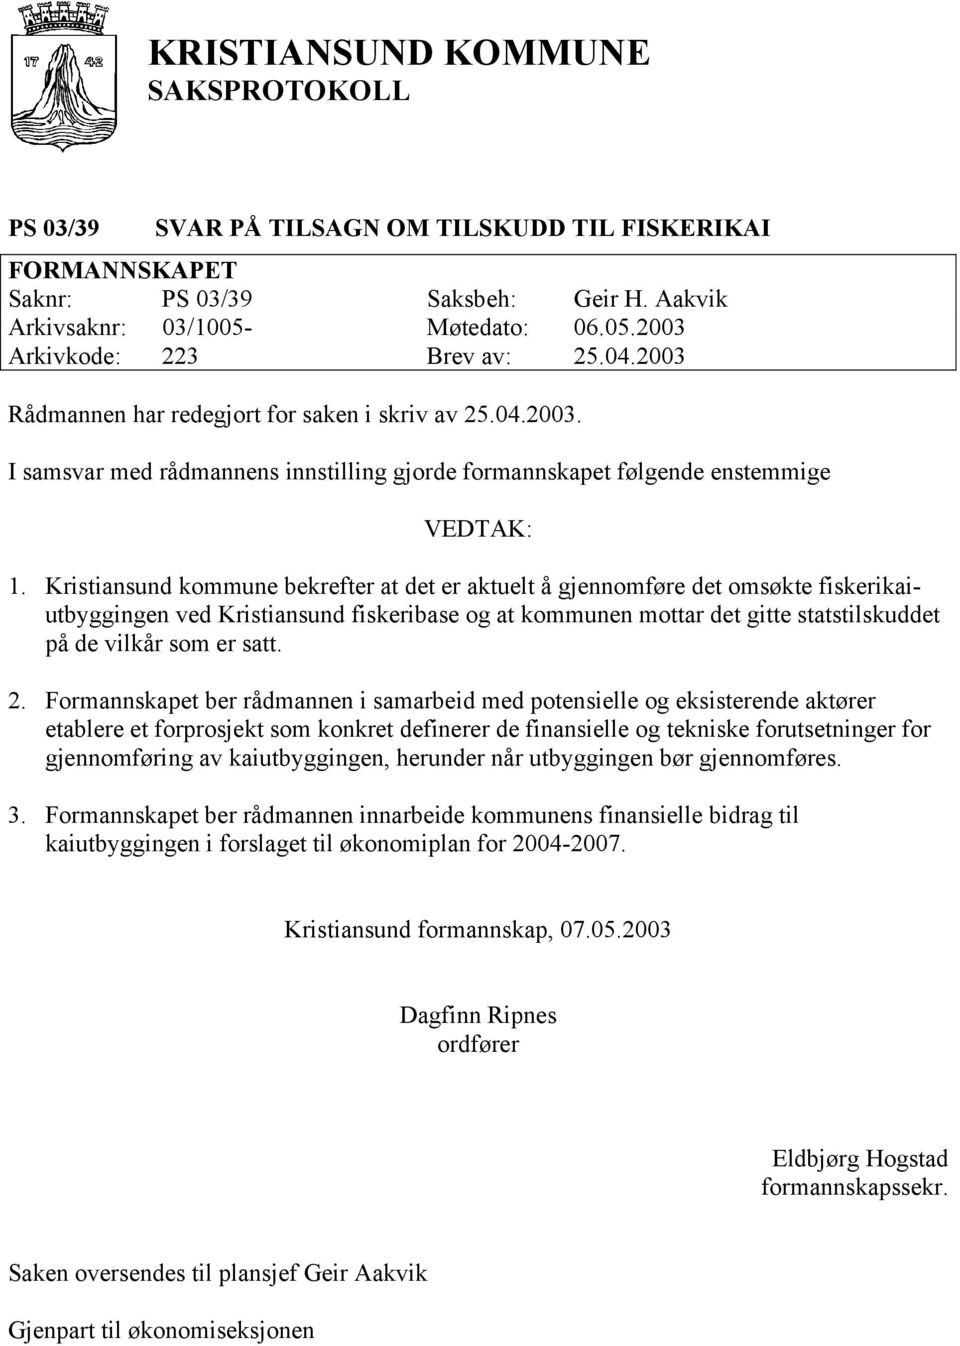 Kristiansund kommune bekrefter at det er aktuelt å gjennomføre det omsøkte fiskerikaiutbyggingen ved Kristiansund fiskeribase og at kommunen mottar det gitte statstilskuddet på de vilkår som er satt.